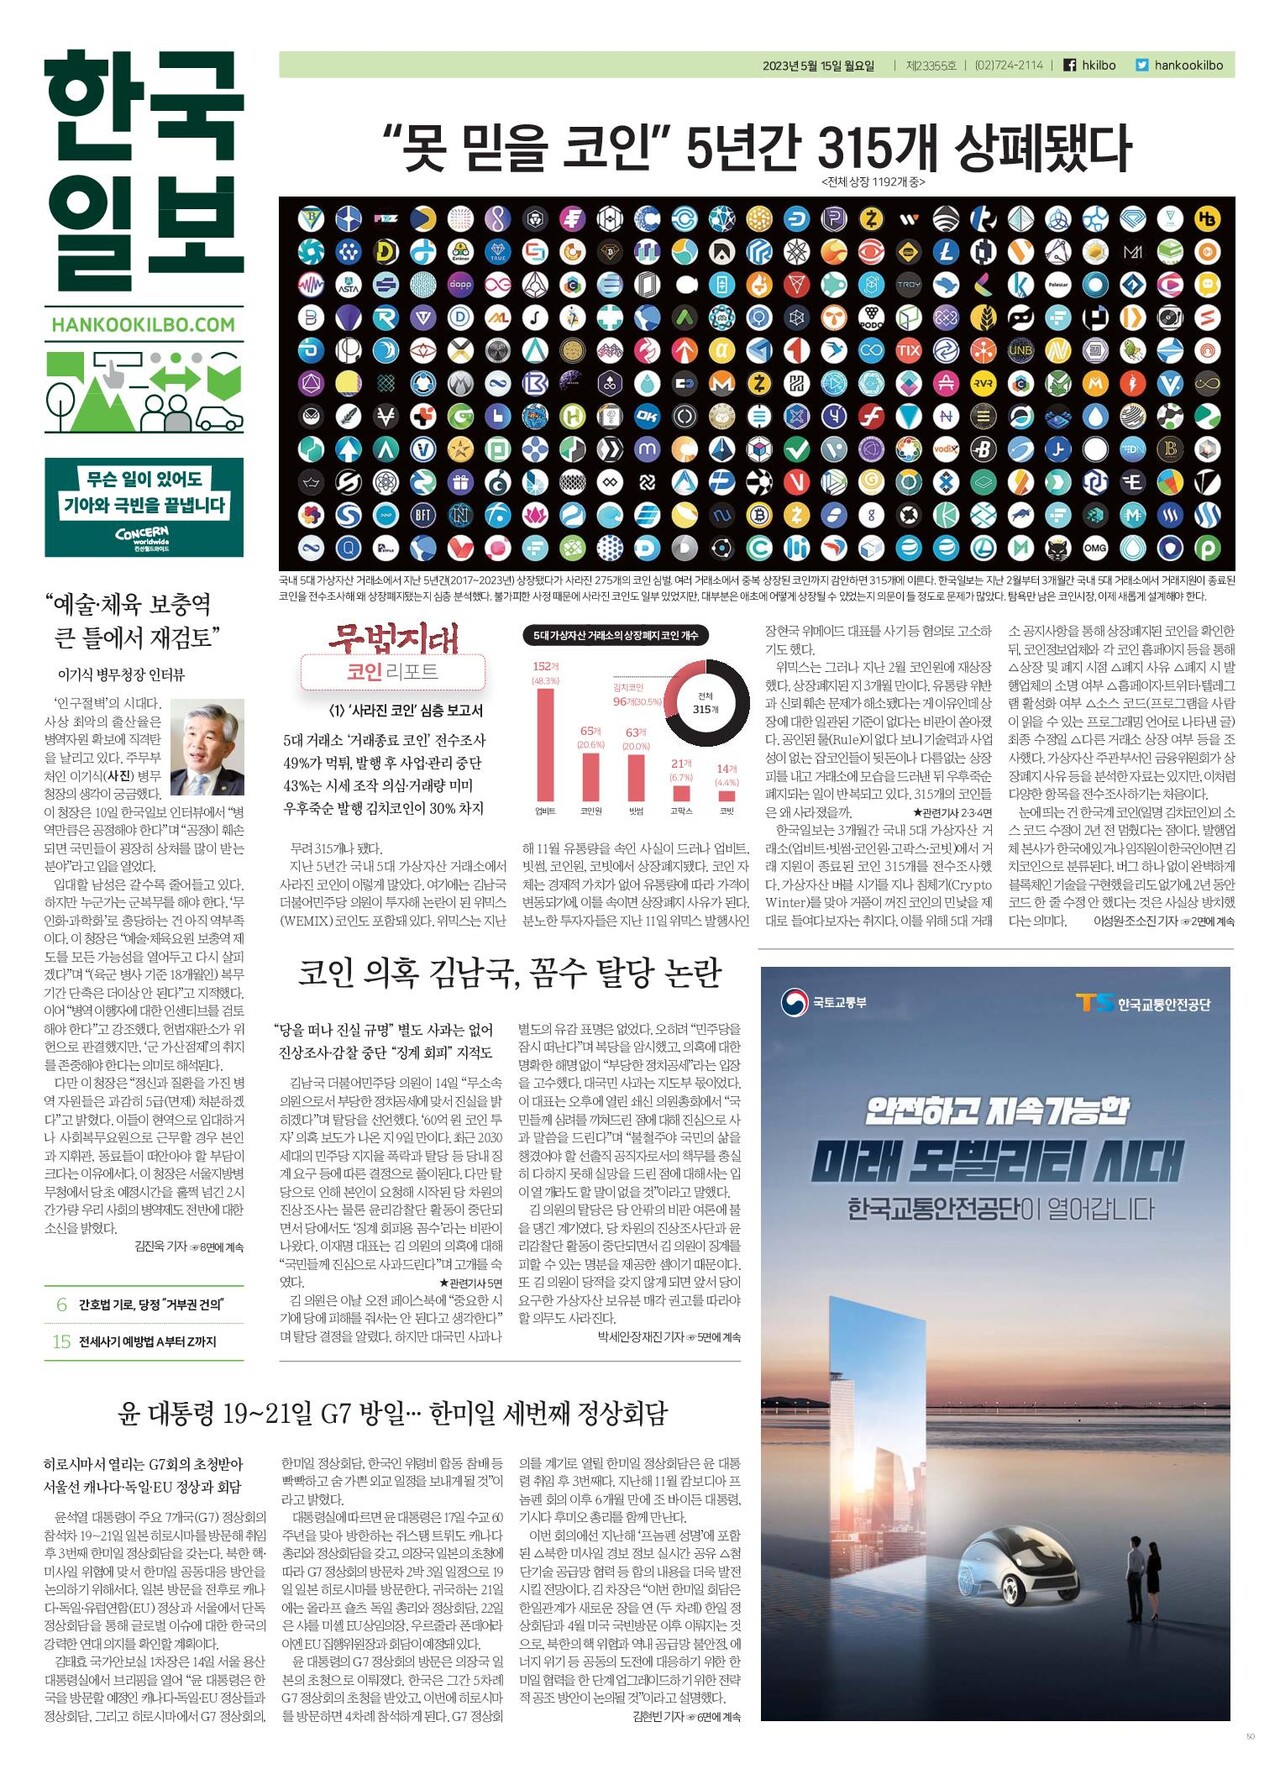 ‘무법지대 코인리포트’ 기획보도 첫 편이 실린 한국일보의 지난 5월 15일 지면. 한국일보 홈페이지 갈무리